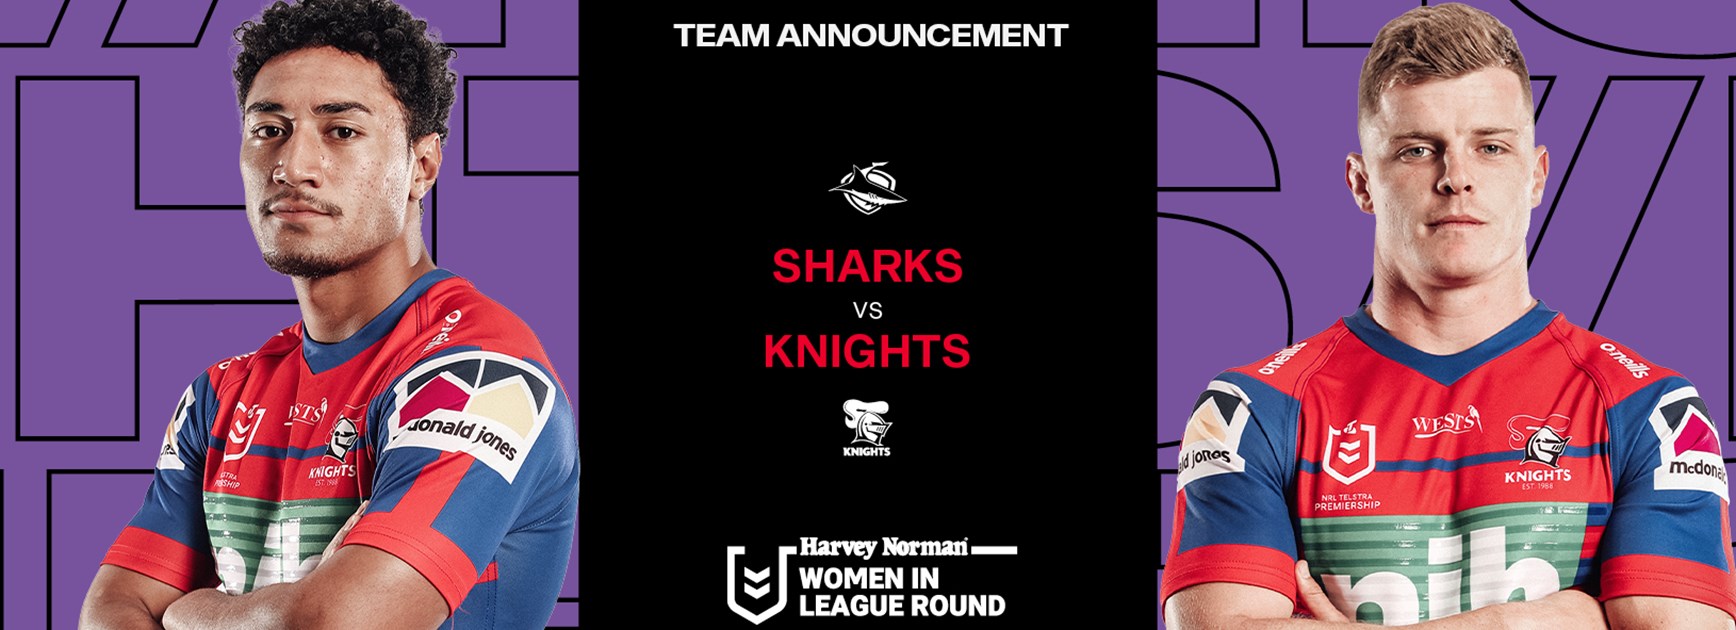 Knights V Sharks Round 22 Nrl Team List Knights [ 630 x 1736 Pixel ]